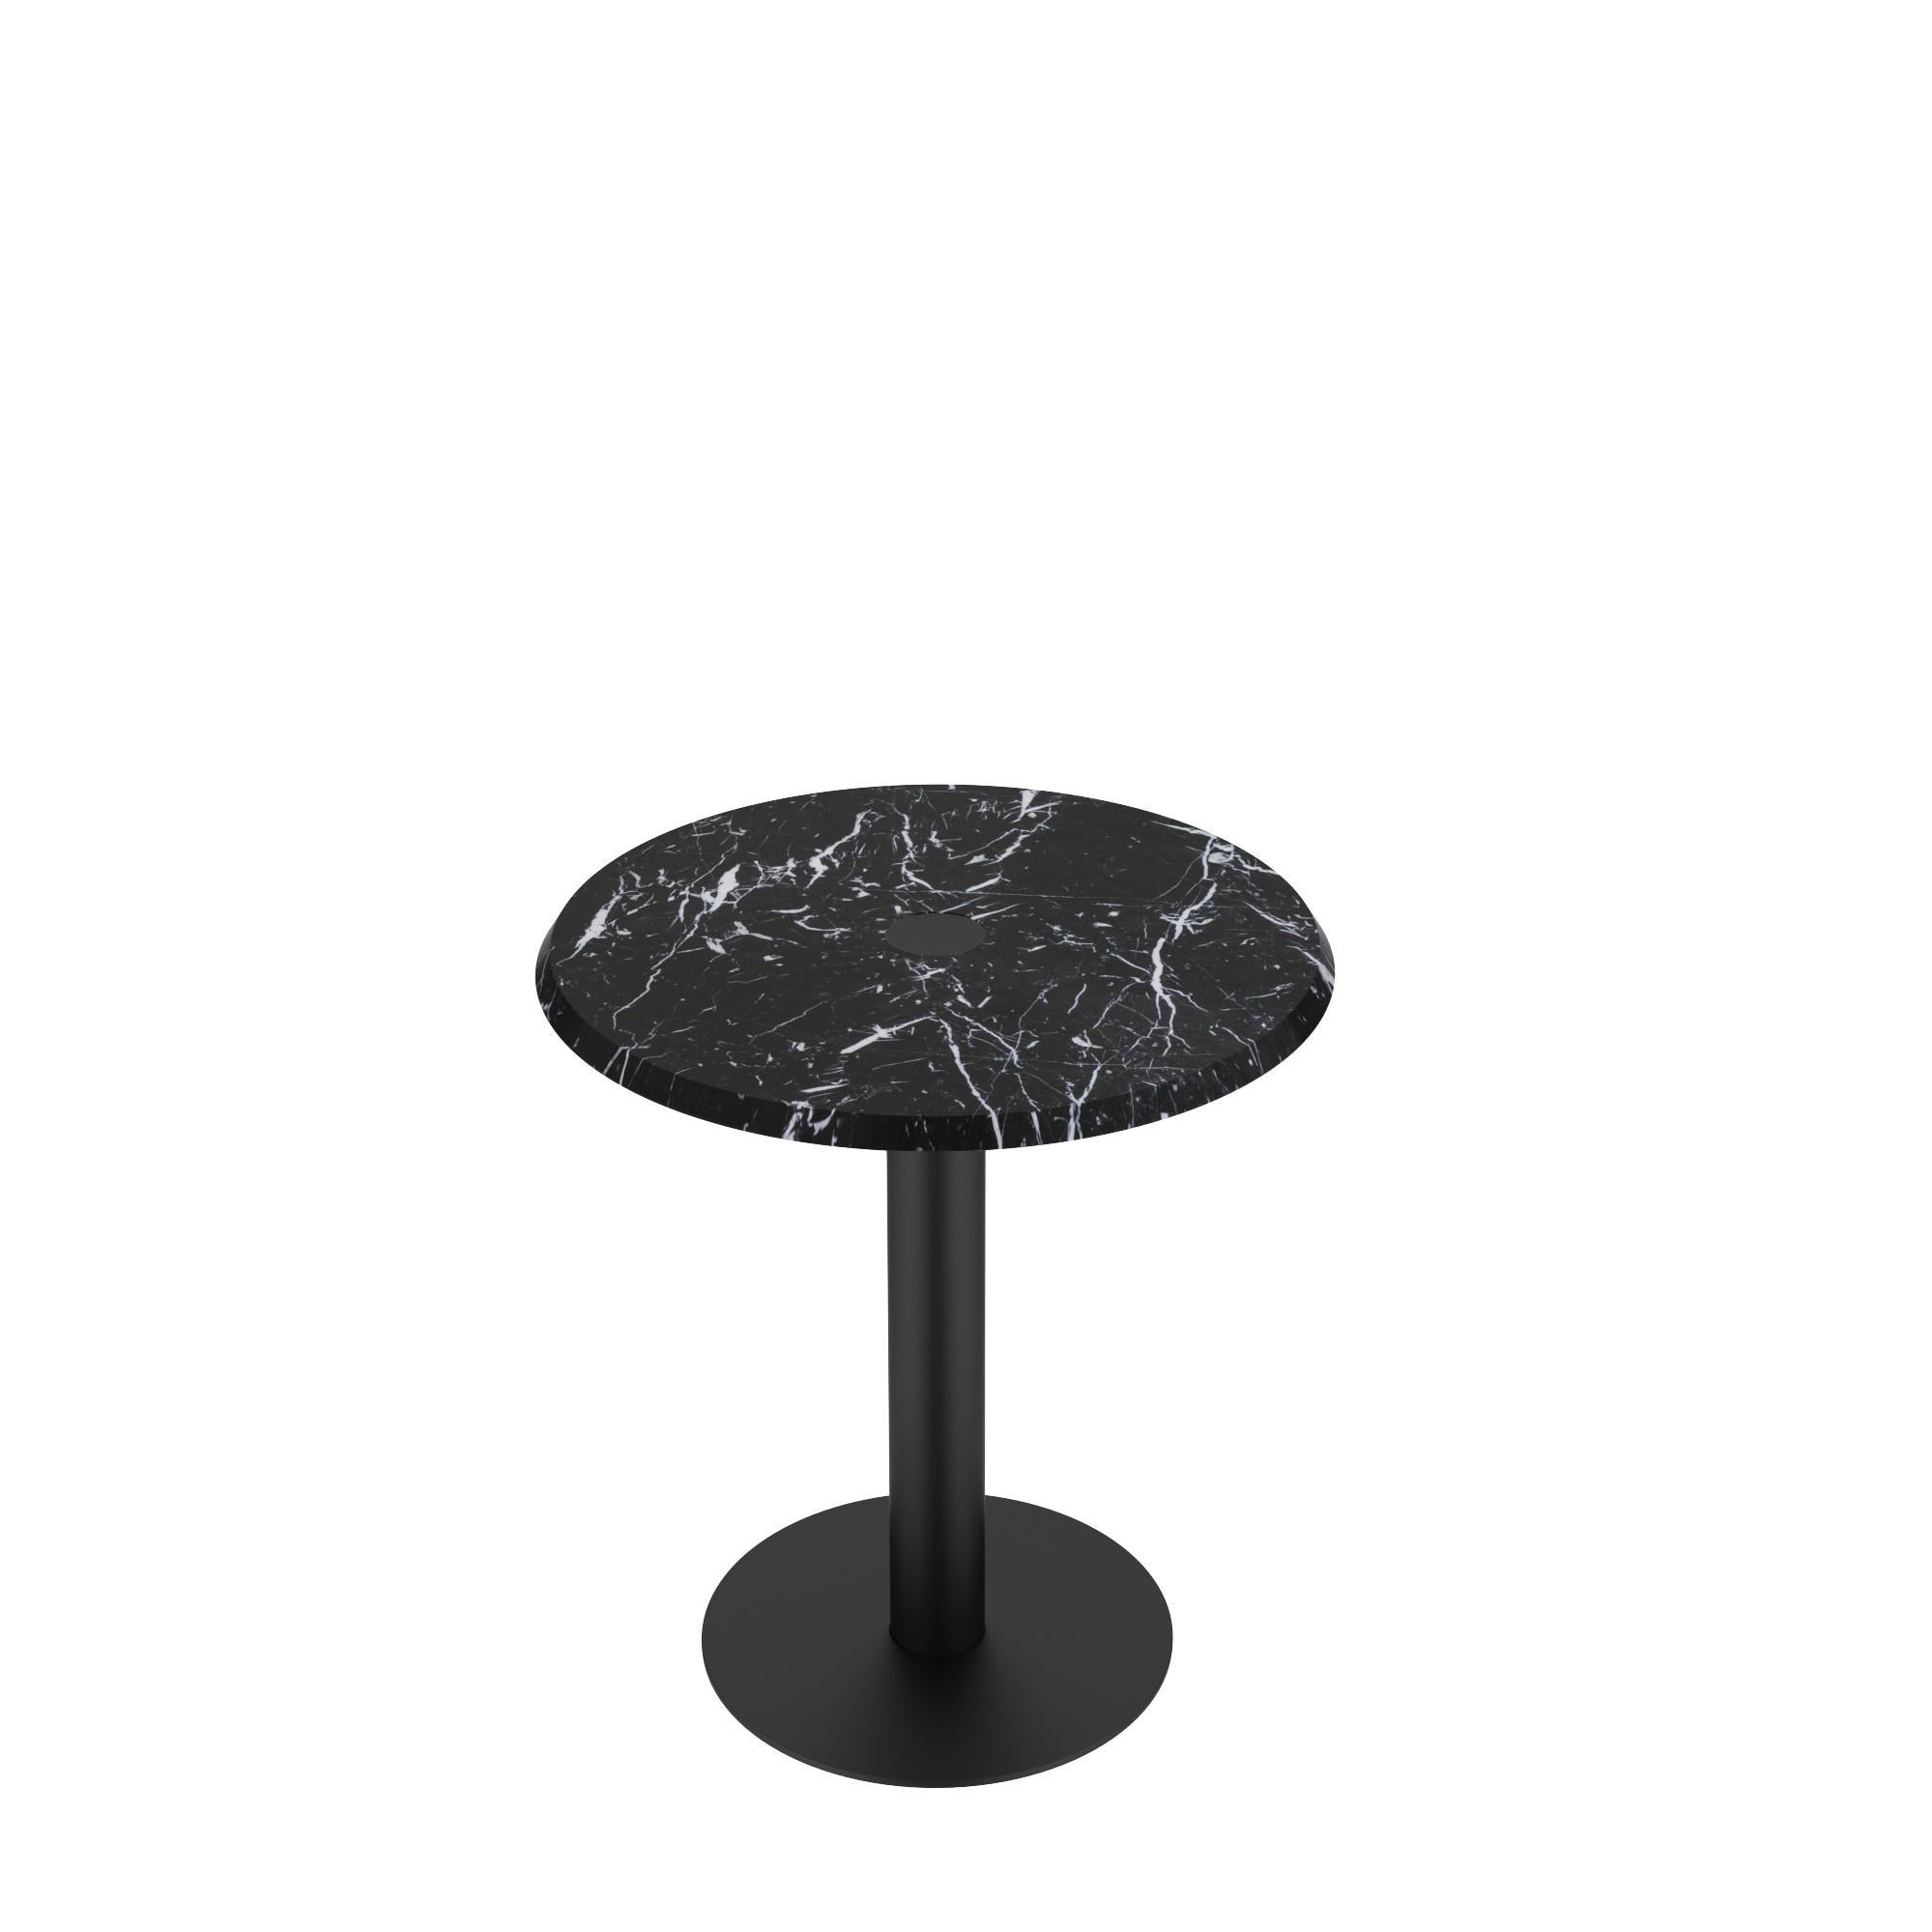 𝗣𝗿𝗼𝗱𝘂𝗰𝘁 𝗗𝗲𝘁𝗮𝗶𝗹𝘀 :
Magnifique table d'appoint ronde avec un cadre à colonne cylindrique unique traversant le plateau de marbre pour exposer le travail de métal joliment réalisé sur la surface ; en outre, le fond peut être doté d'une